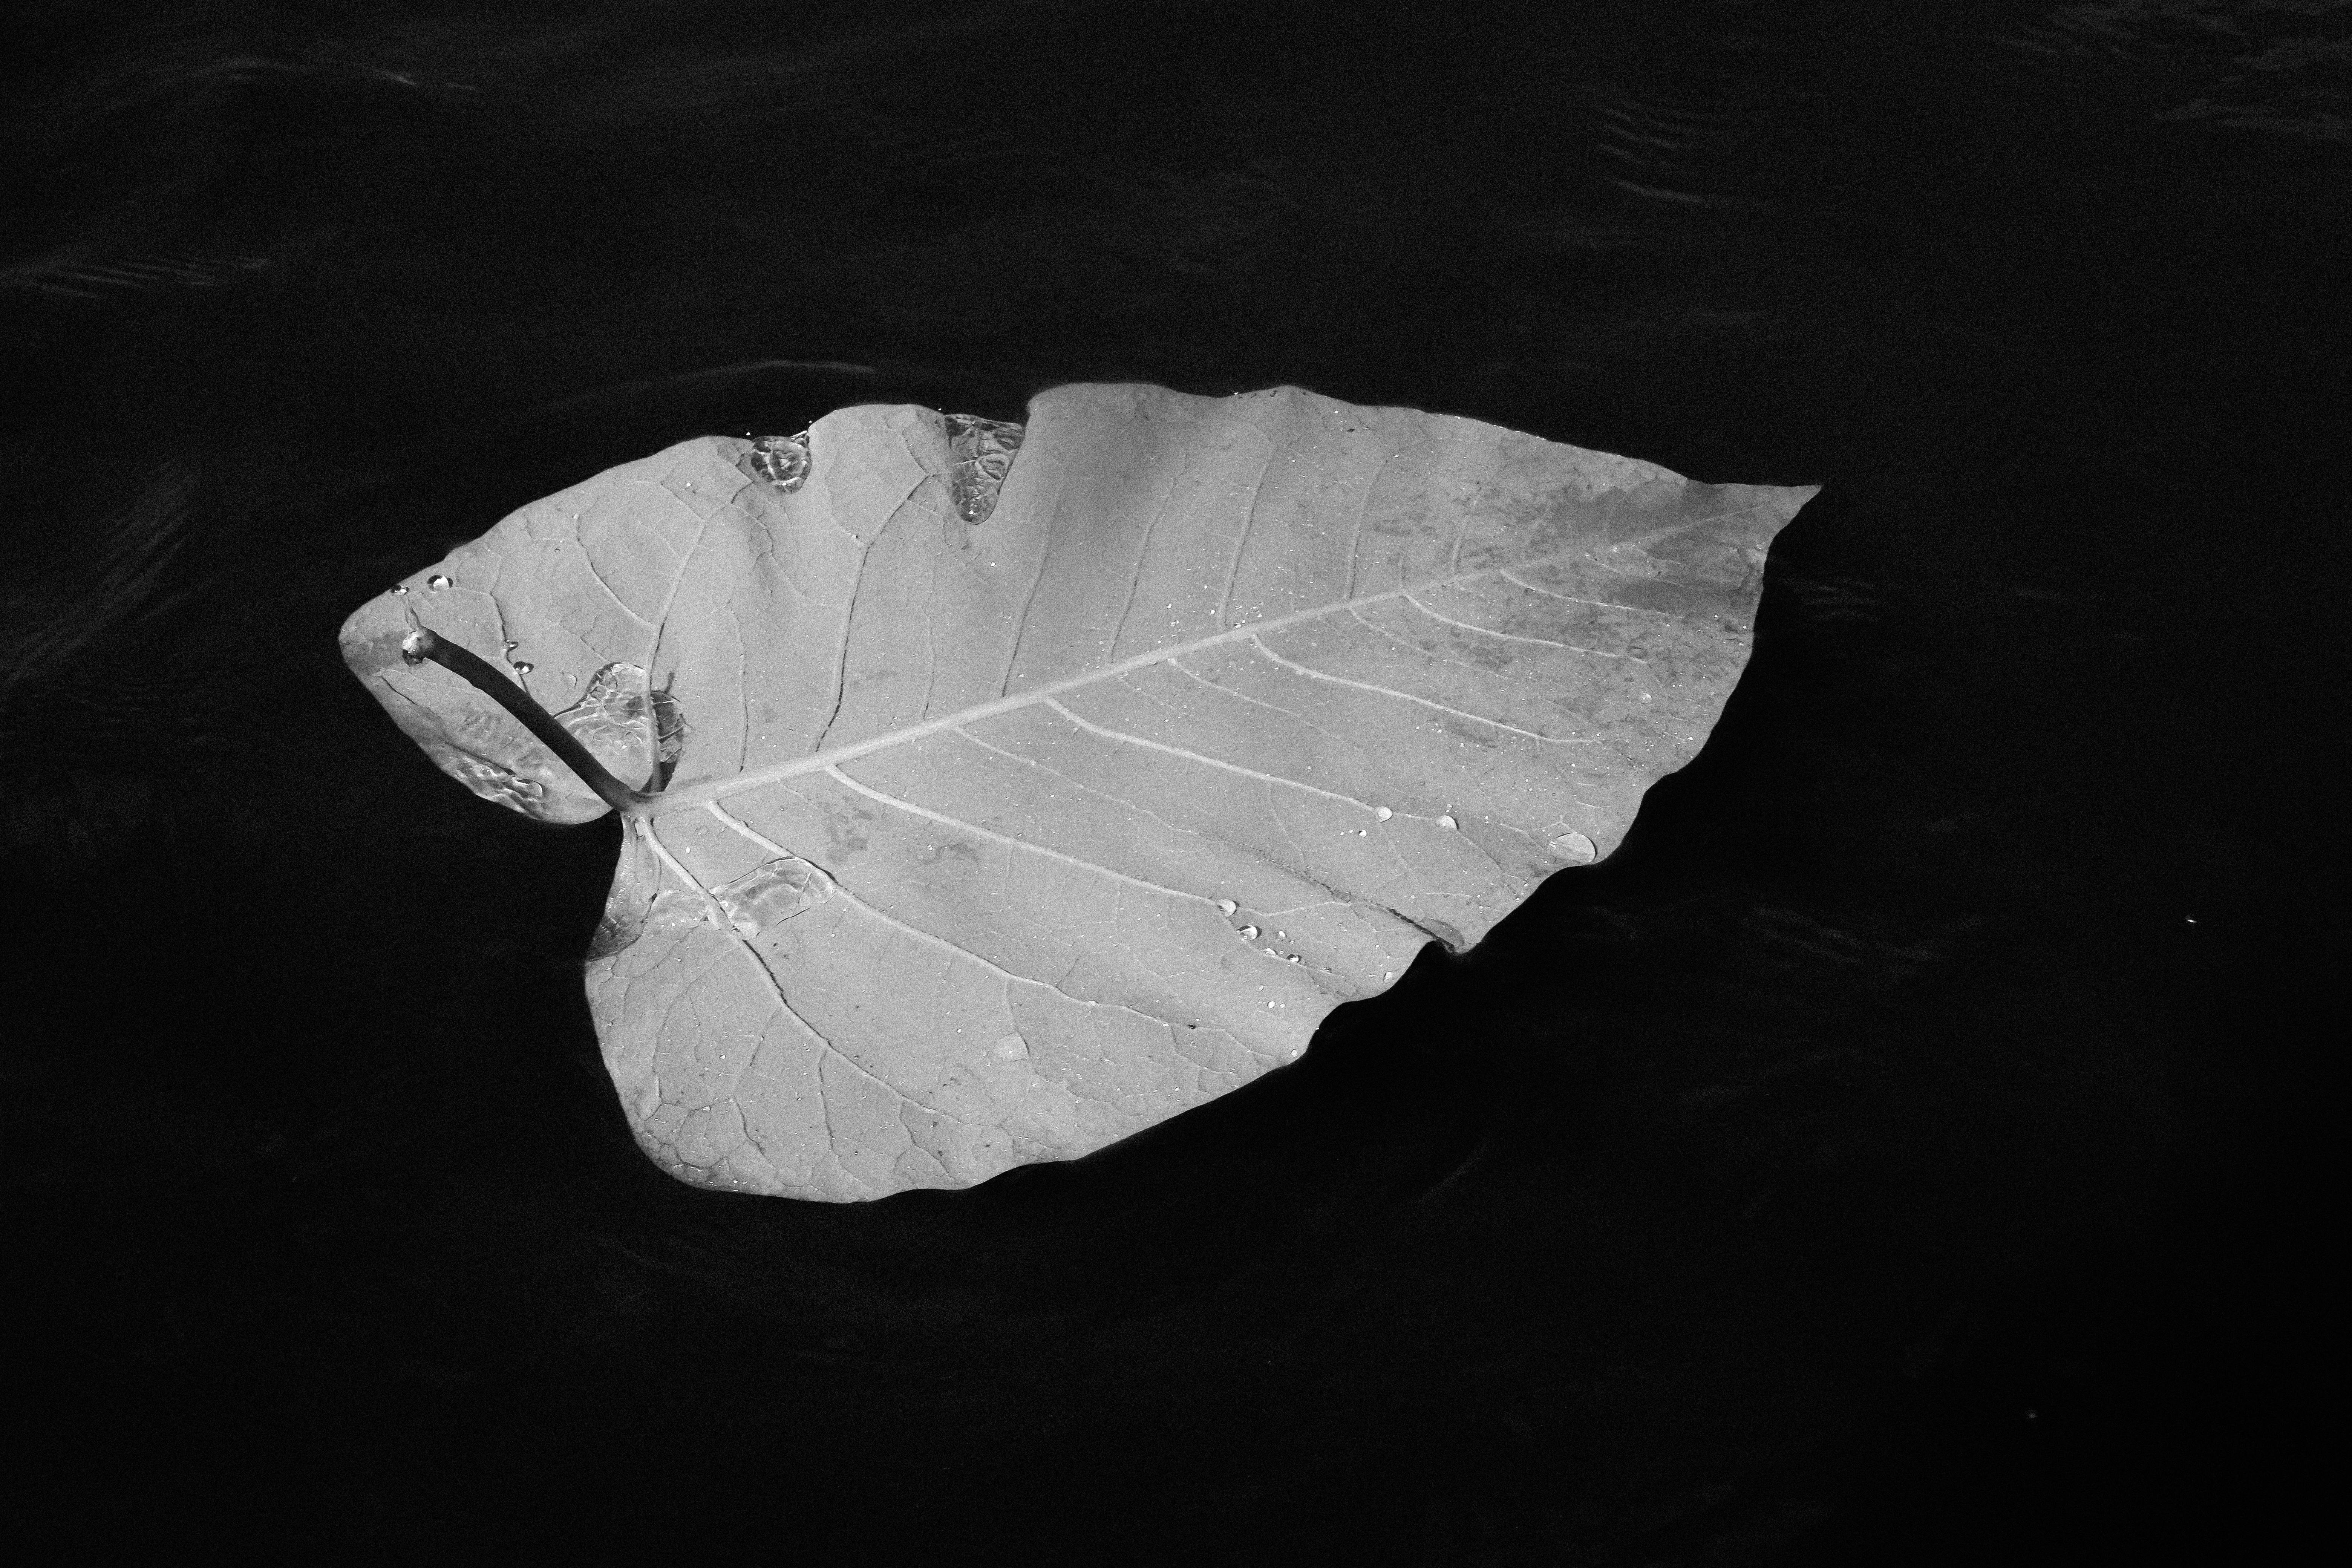 leaf still life photography  black png download - 1200*806